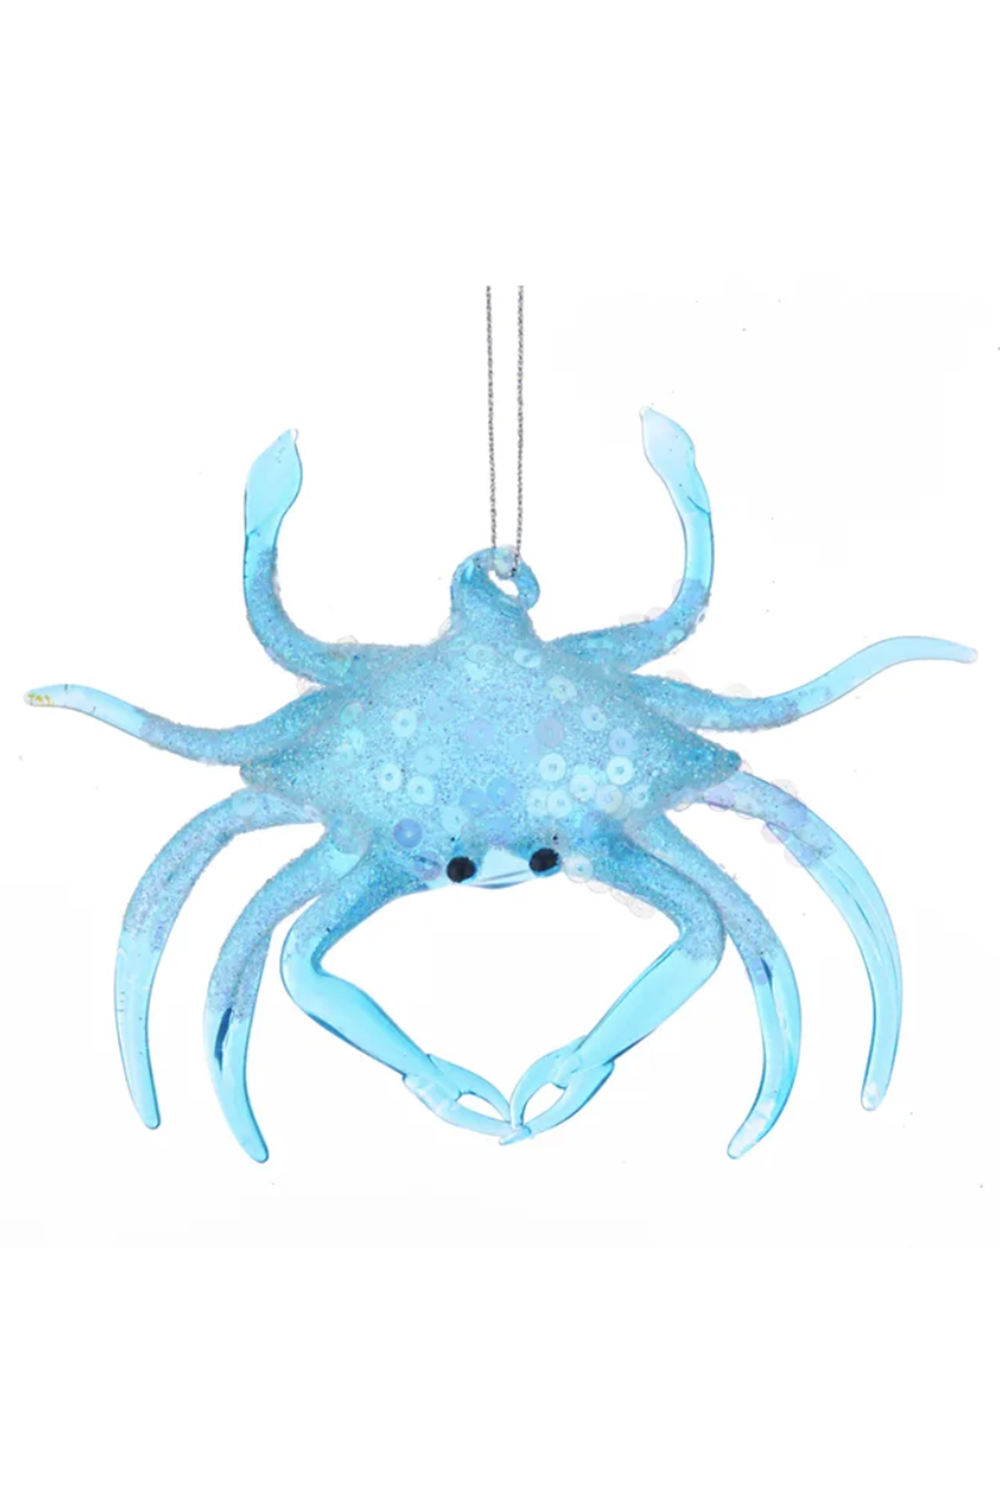 Glass Ornament - Whimsical Aqua Blue Crab